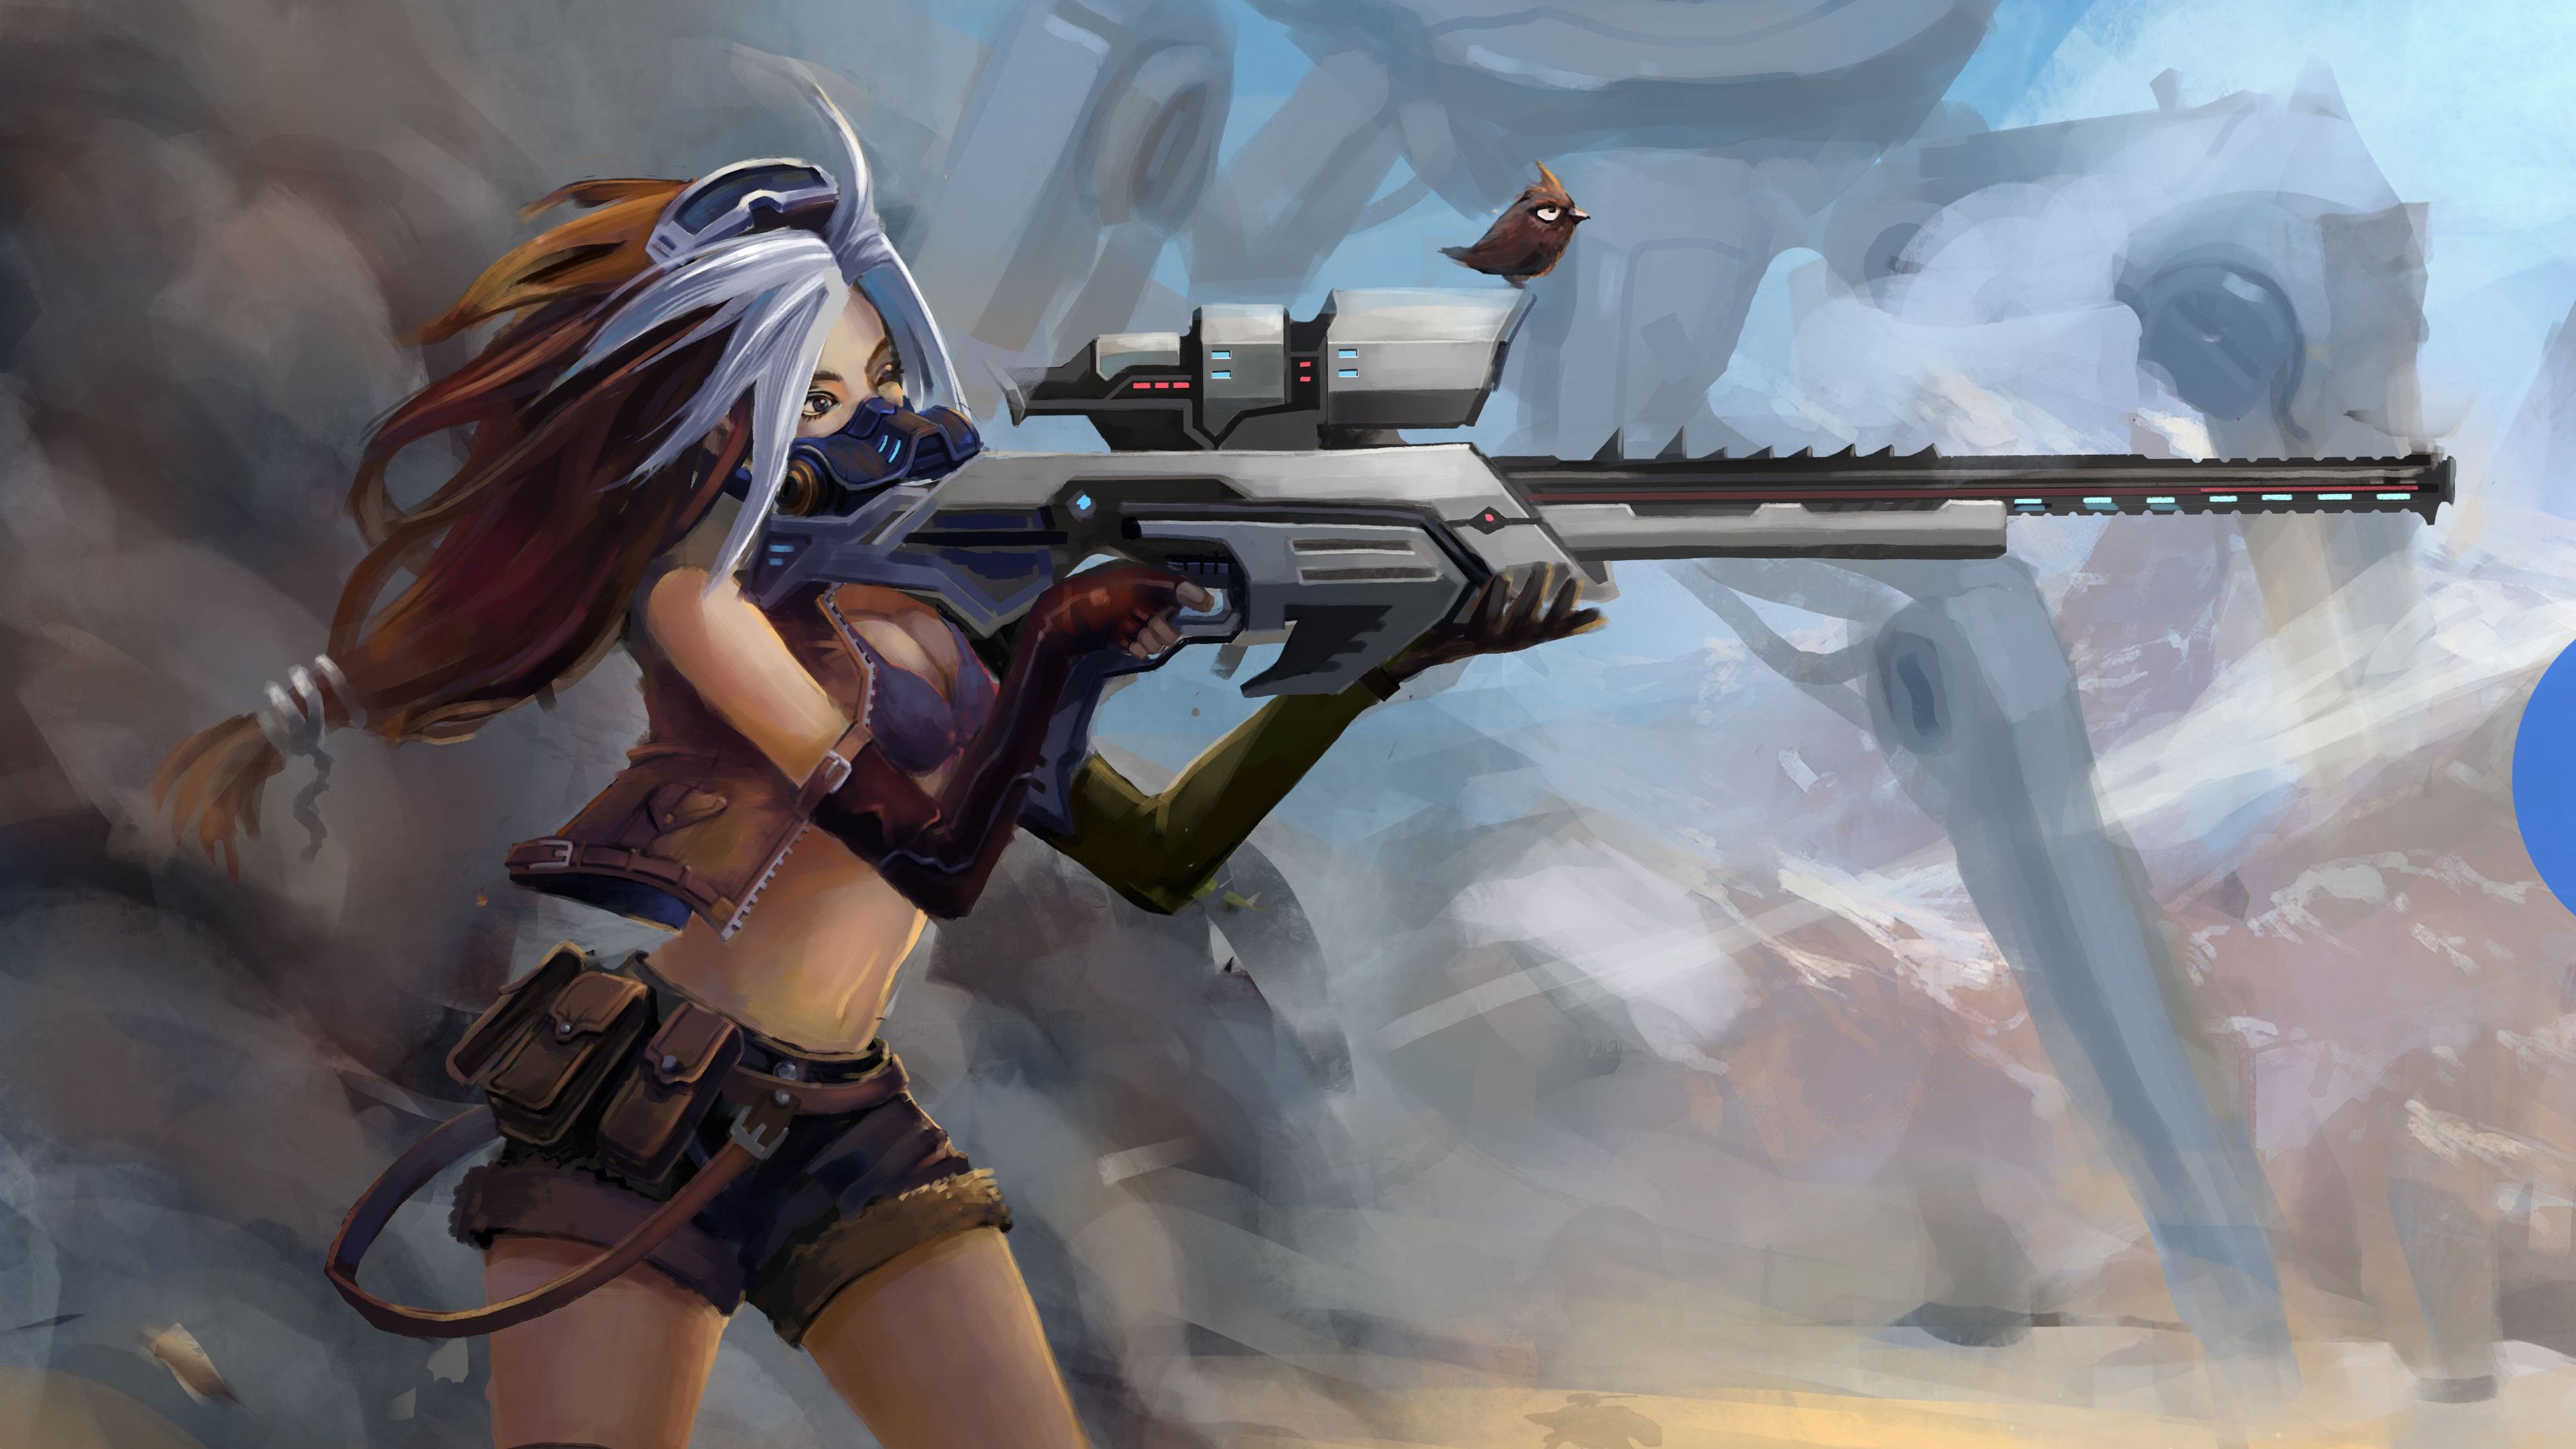 Sniper Girl Fantasy Art 4k Ultra HD Wallpaper